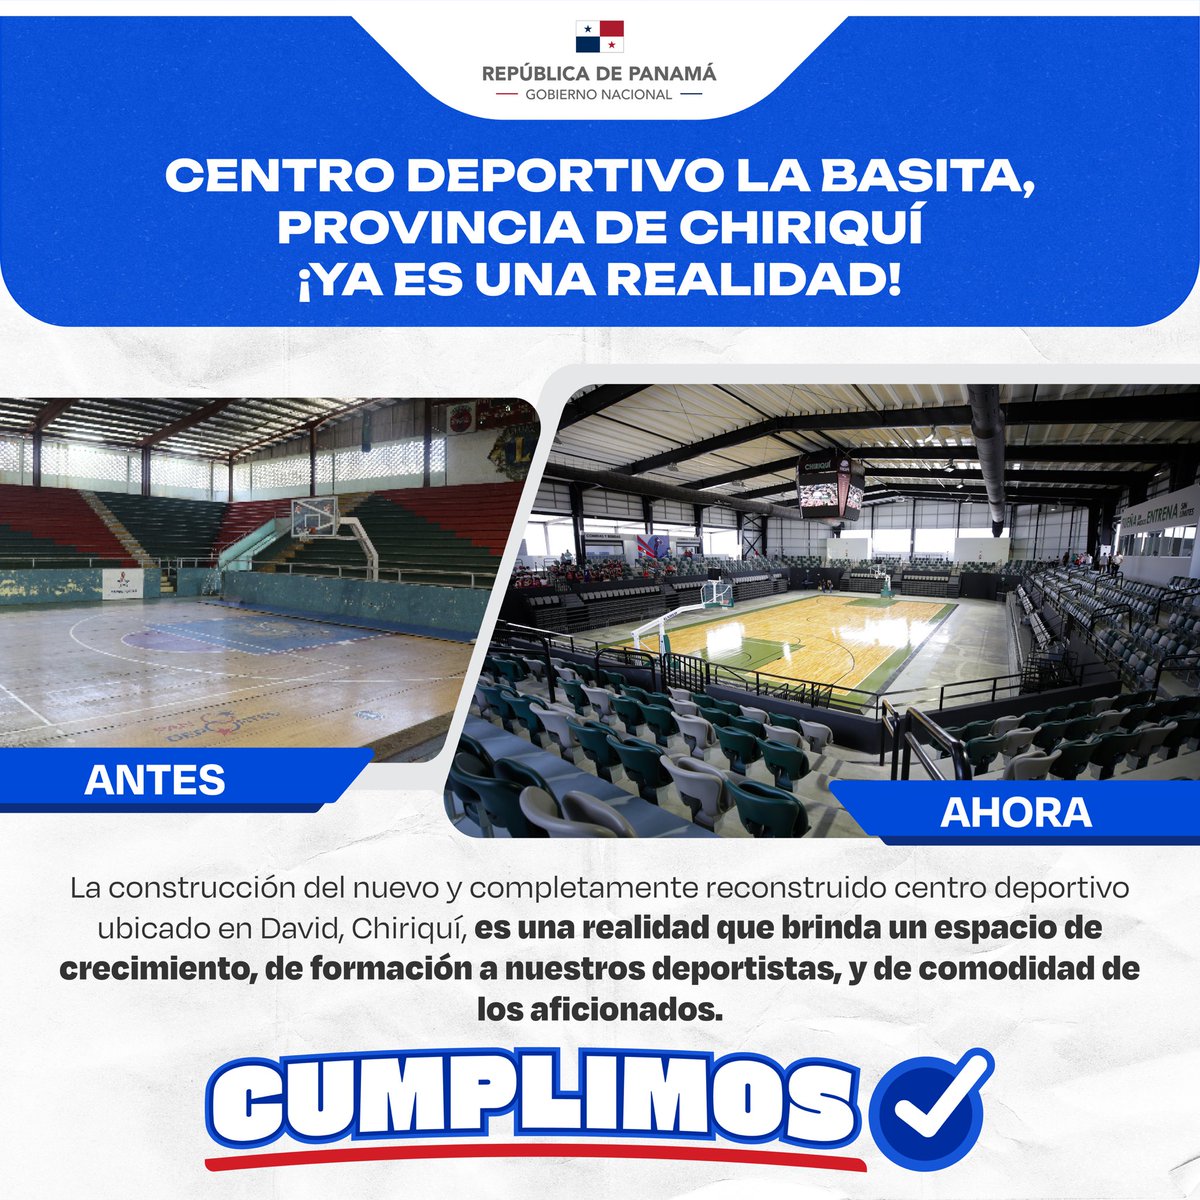 Continuamos impulsando el desarrollo de los jóvenes a través del deporte. Mediante la inauguración del Centro Deportivo La Basita en Chiriquí, el cual cuenta con instalaciones de primer nivel, para que nuestros atletas se puedan preparar para torneos nacionales e internacionales.